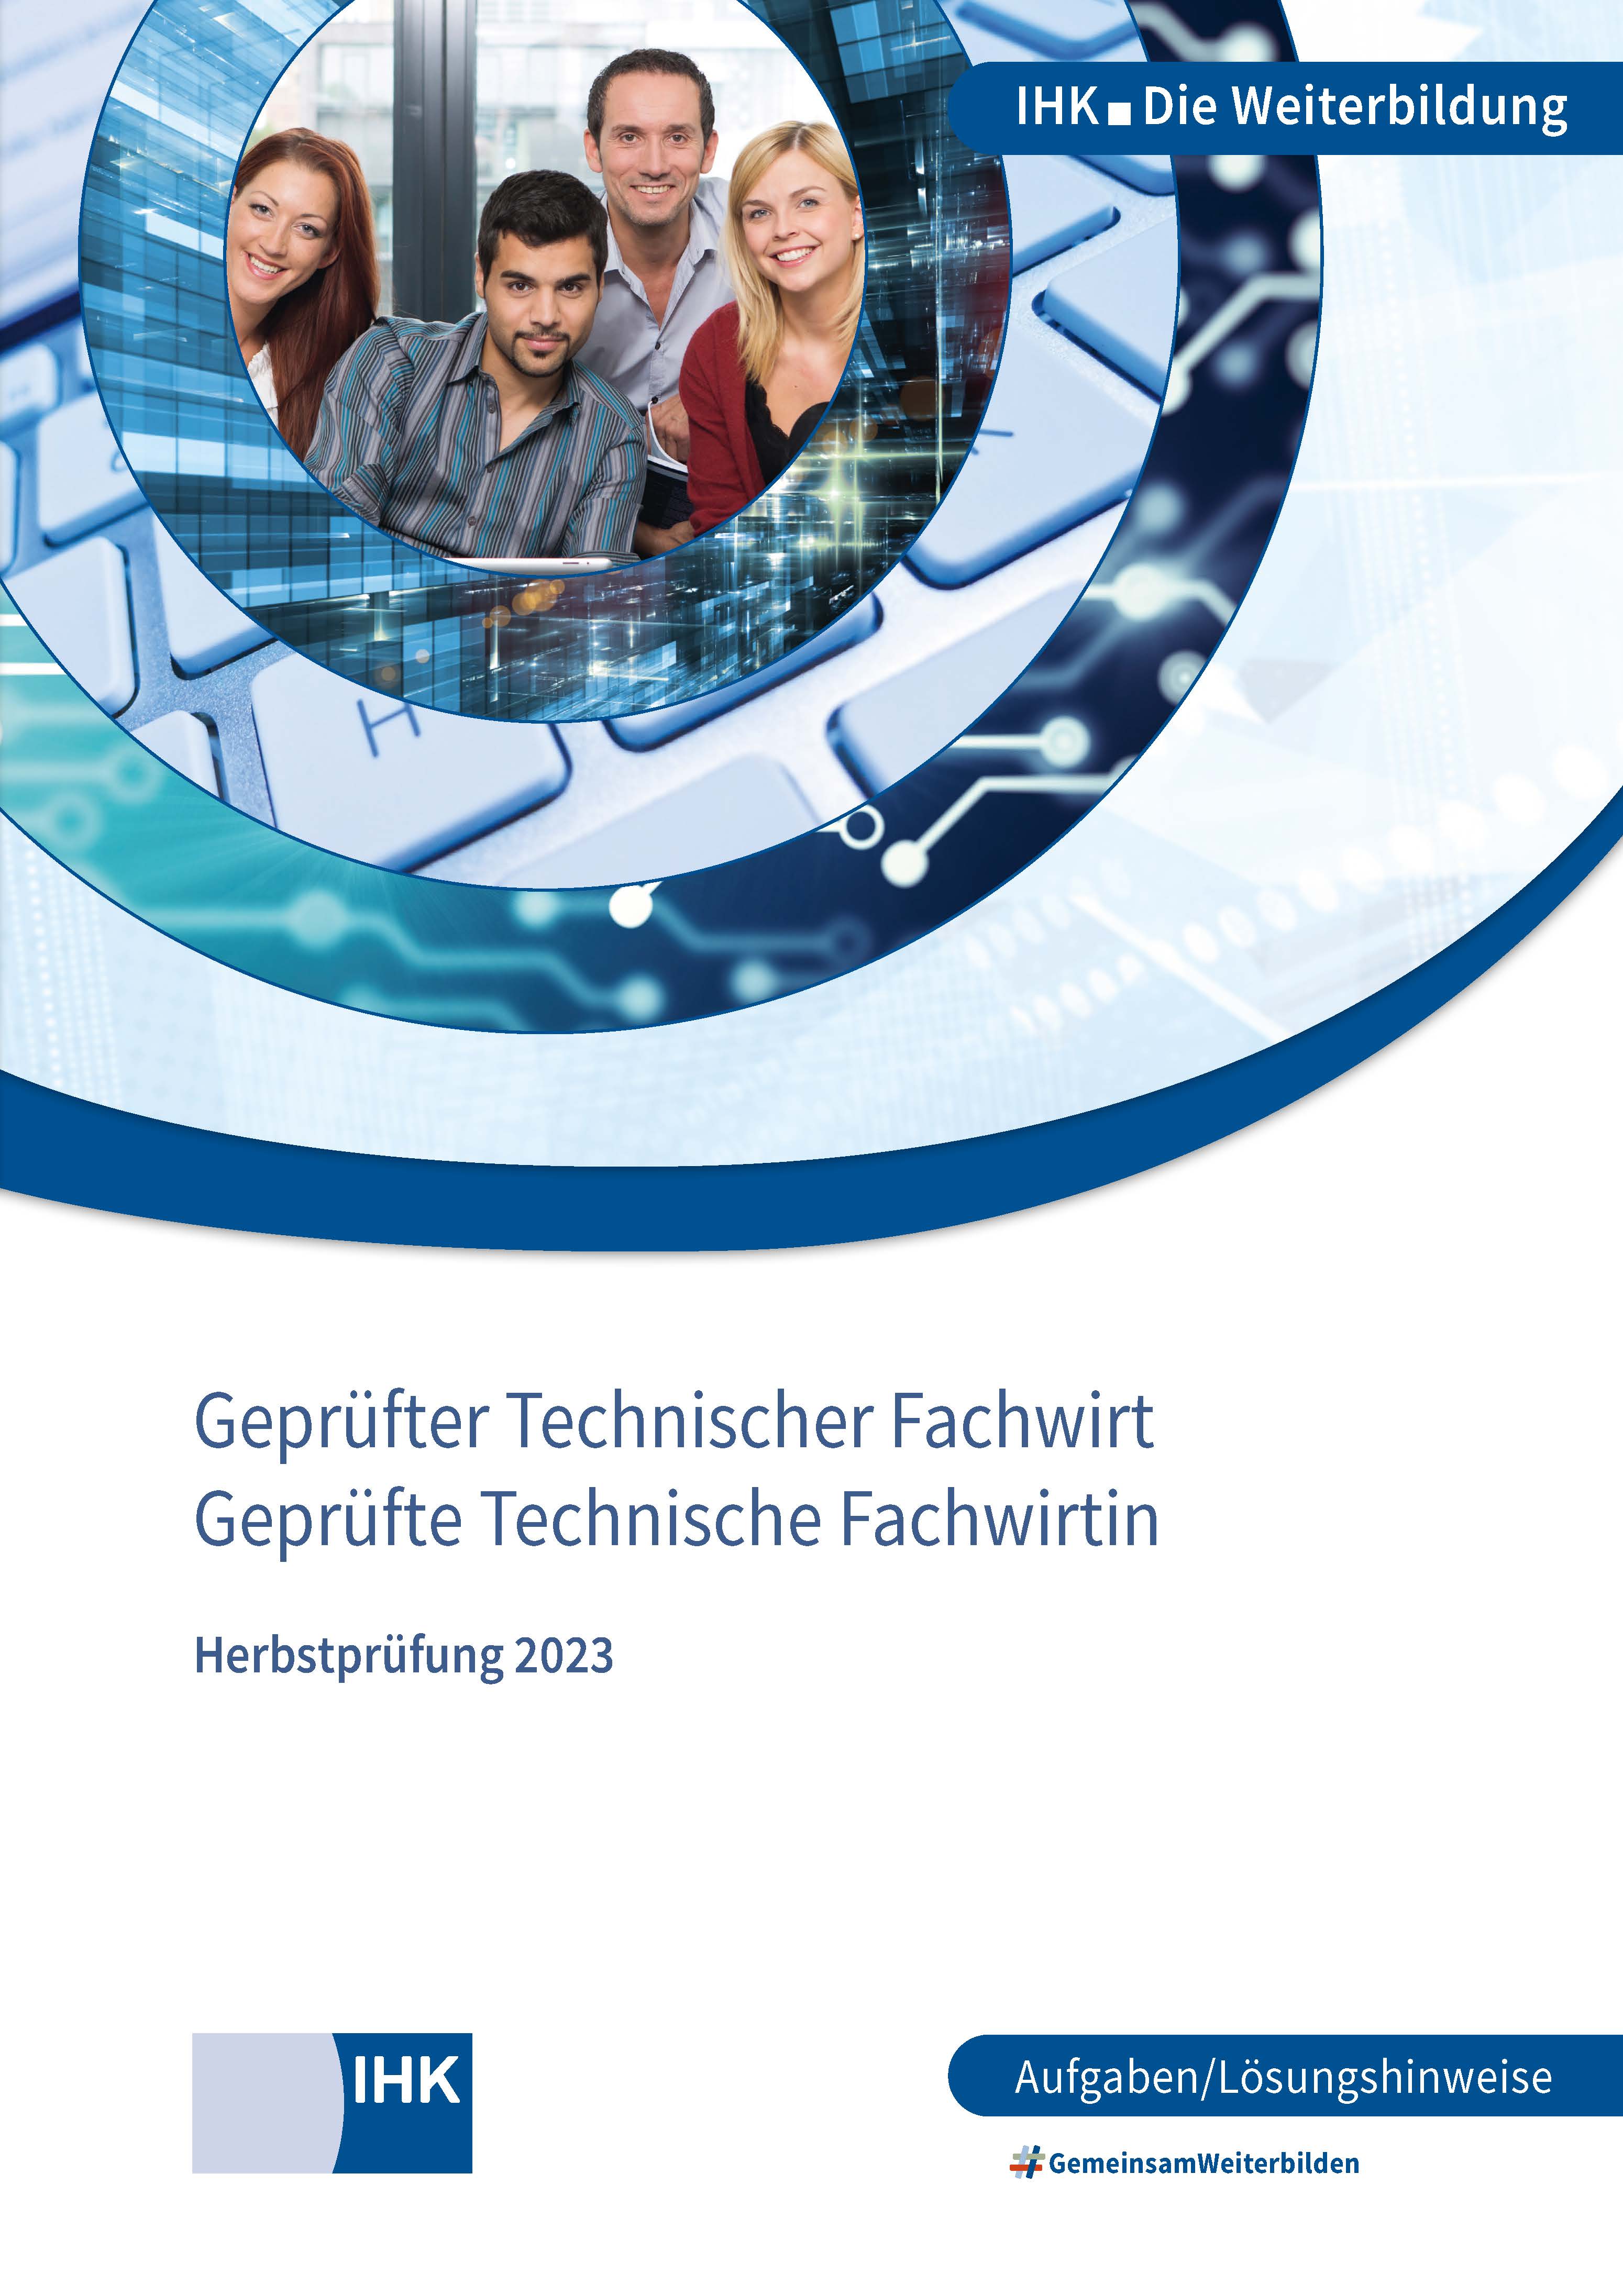 Cover von Geprüfte Technische Fachwirte - Herbstprüfung 2023 (Verordnung 2006)